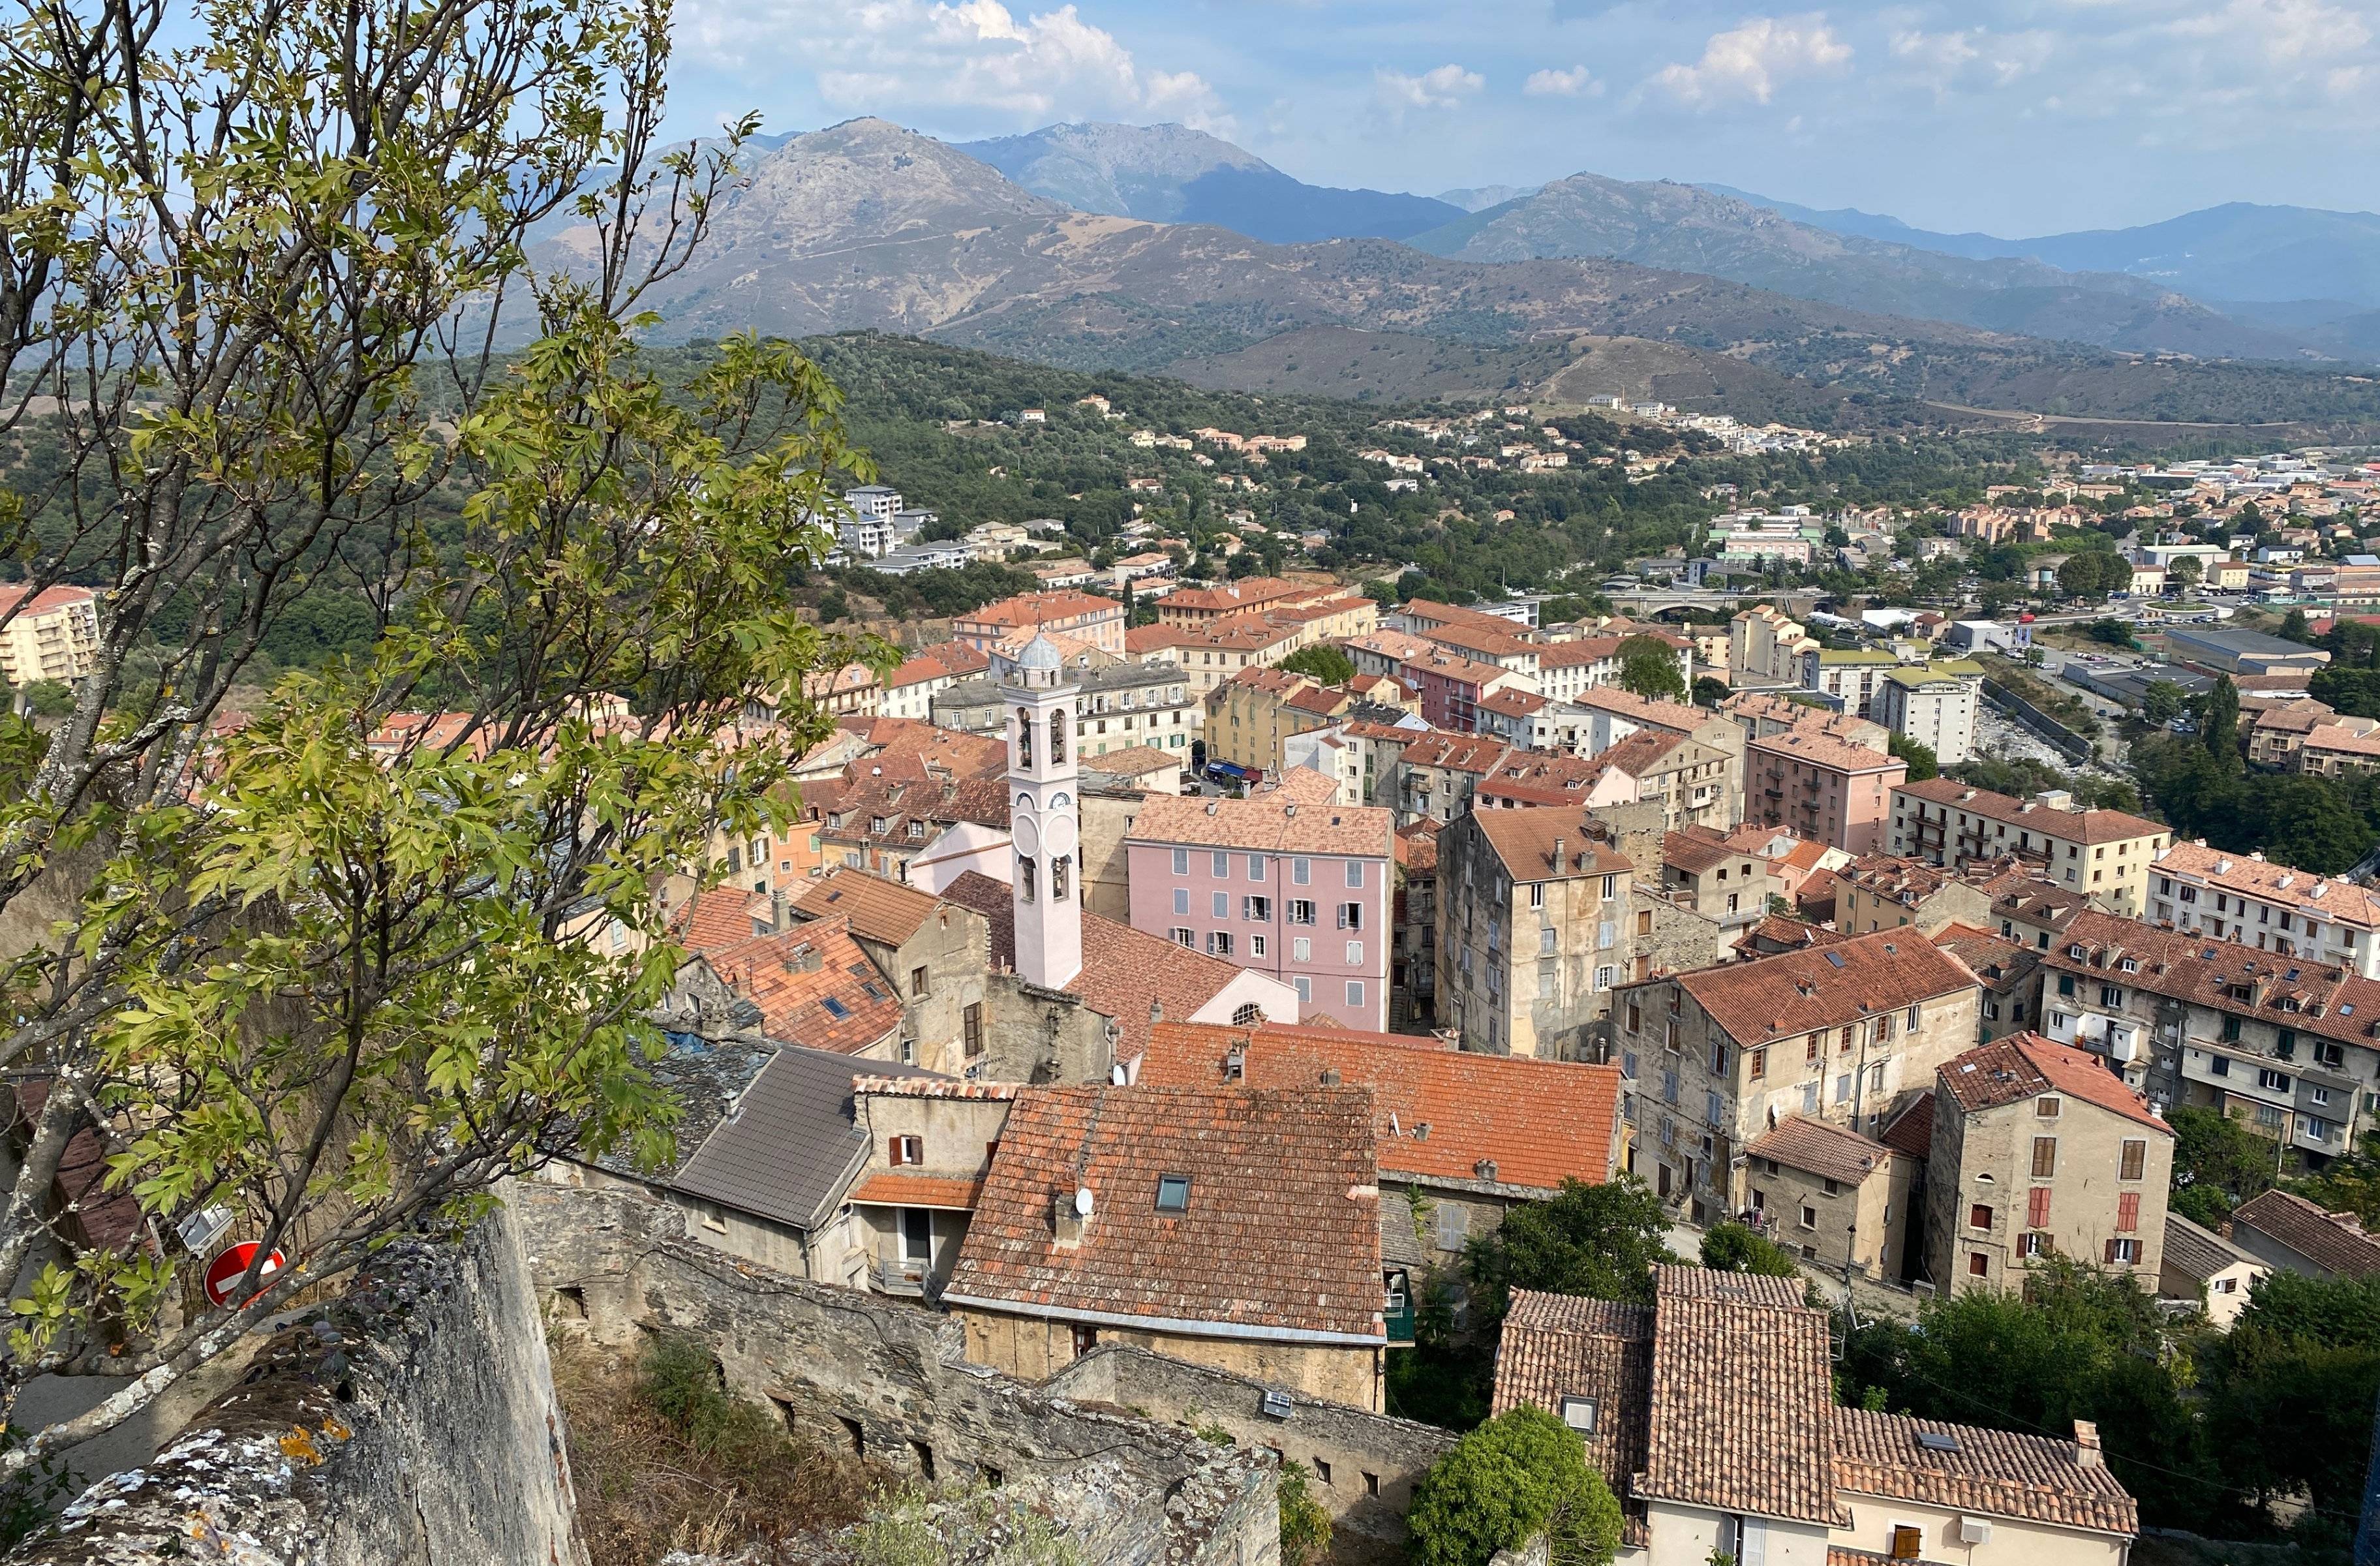 Boucle terminée : Retour à Bastia pour la fin de l'aventure corse